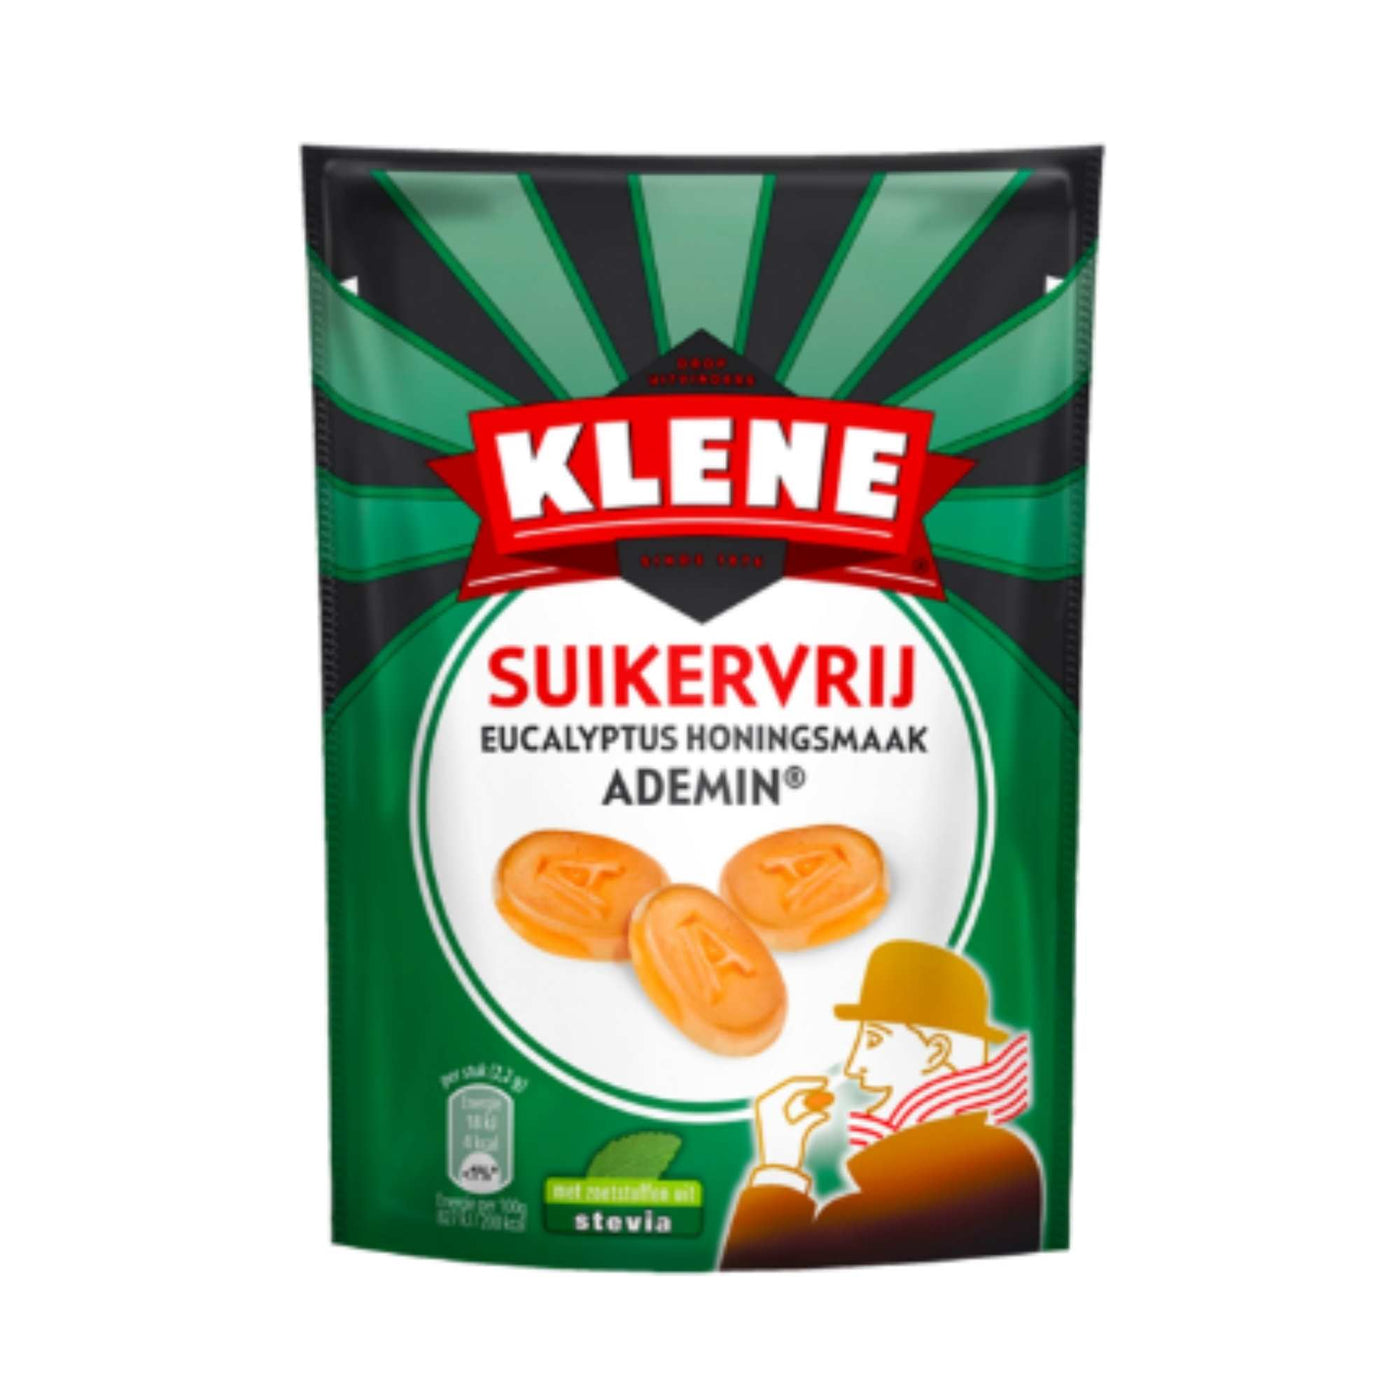 Klene Ademin – Sugar Free Eucalyptus, Mint & Honey Pastilles